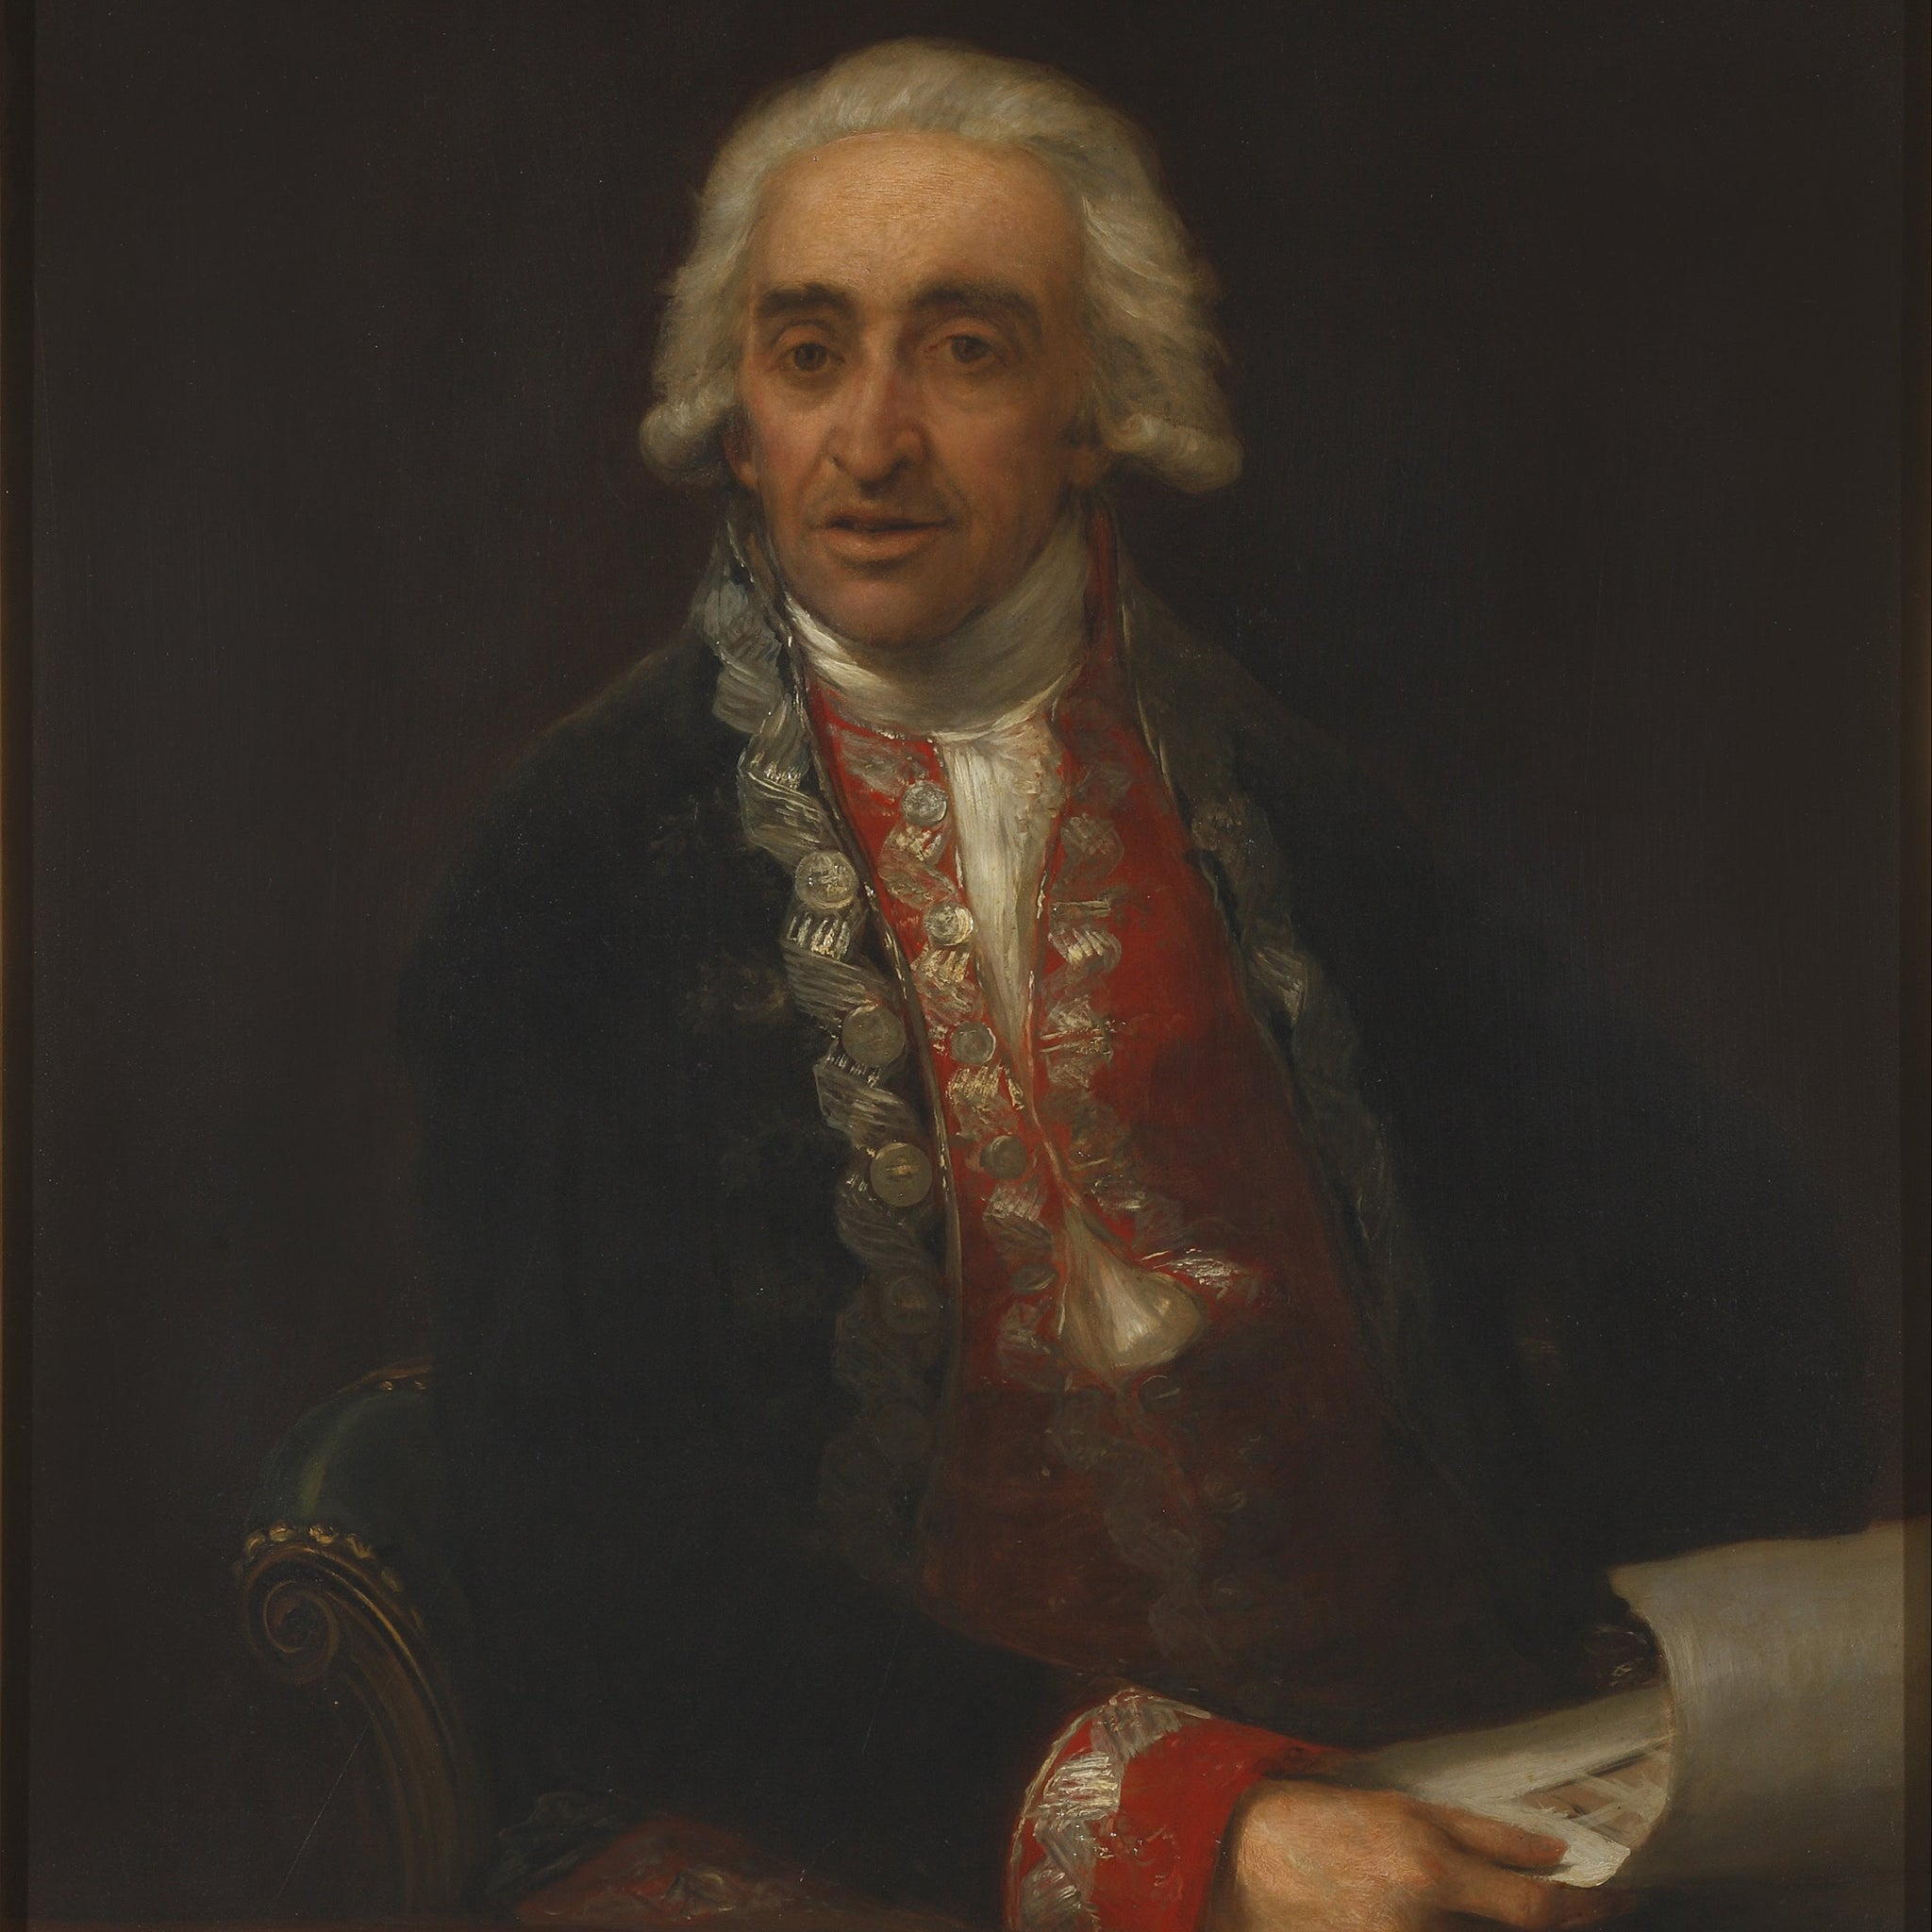 Portrait de Juan de Villanueva - Francisco de Goya